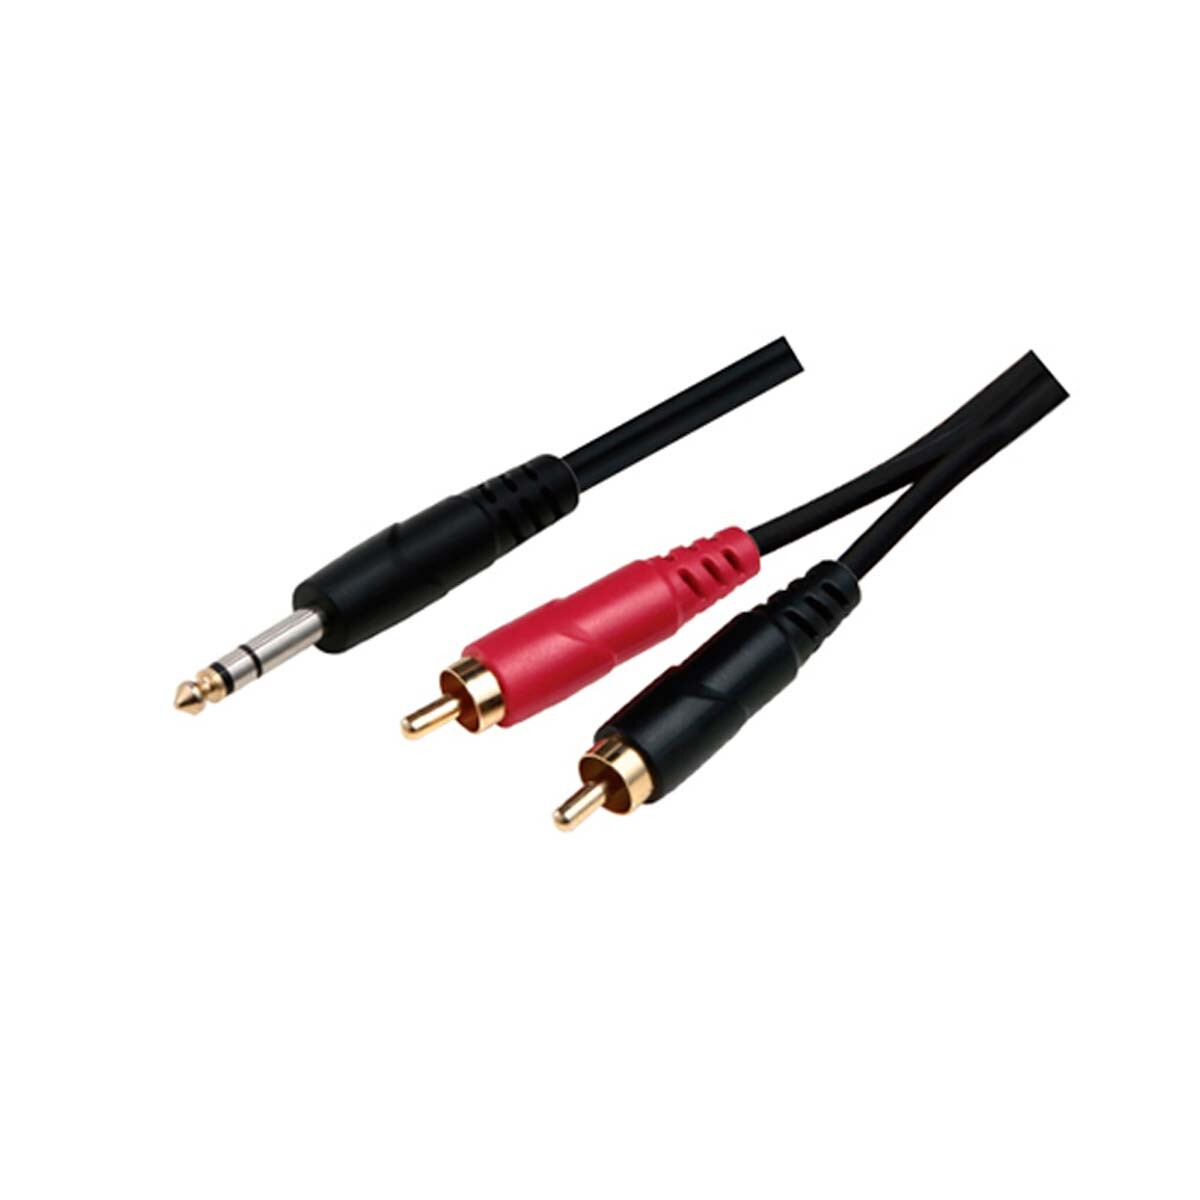 Cable Adaptador Soundking Bb3142m 1x6,3st+2x6,3 2m 